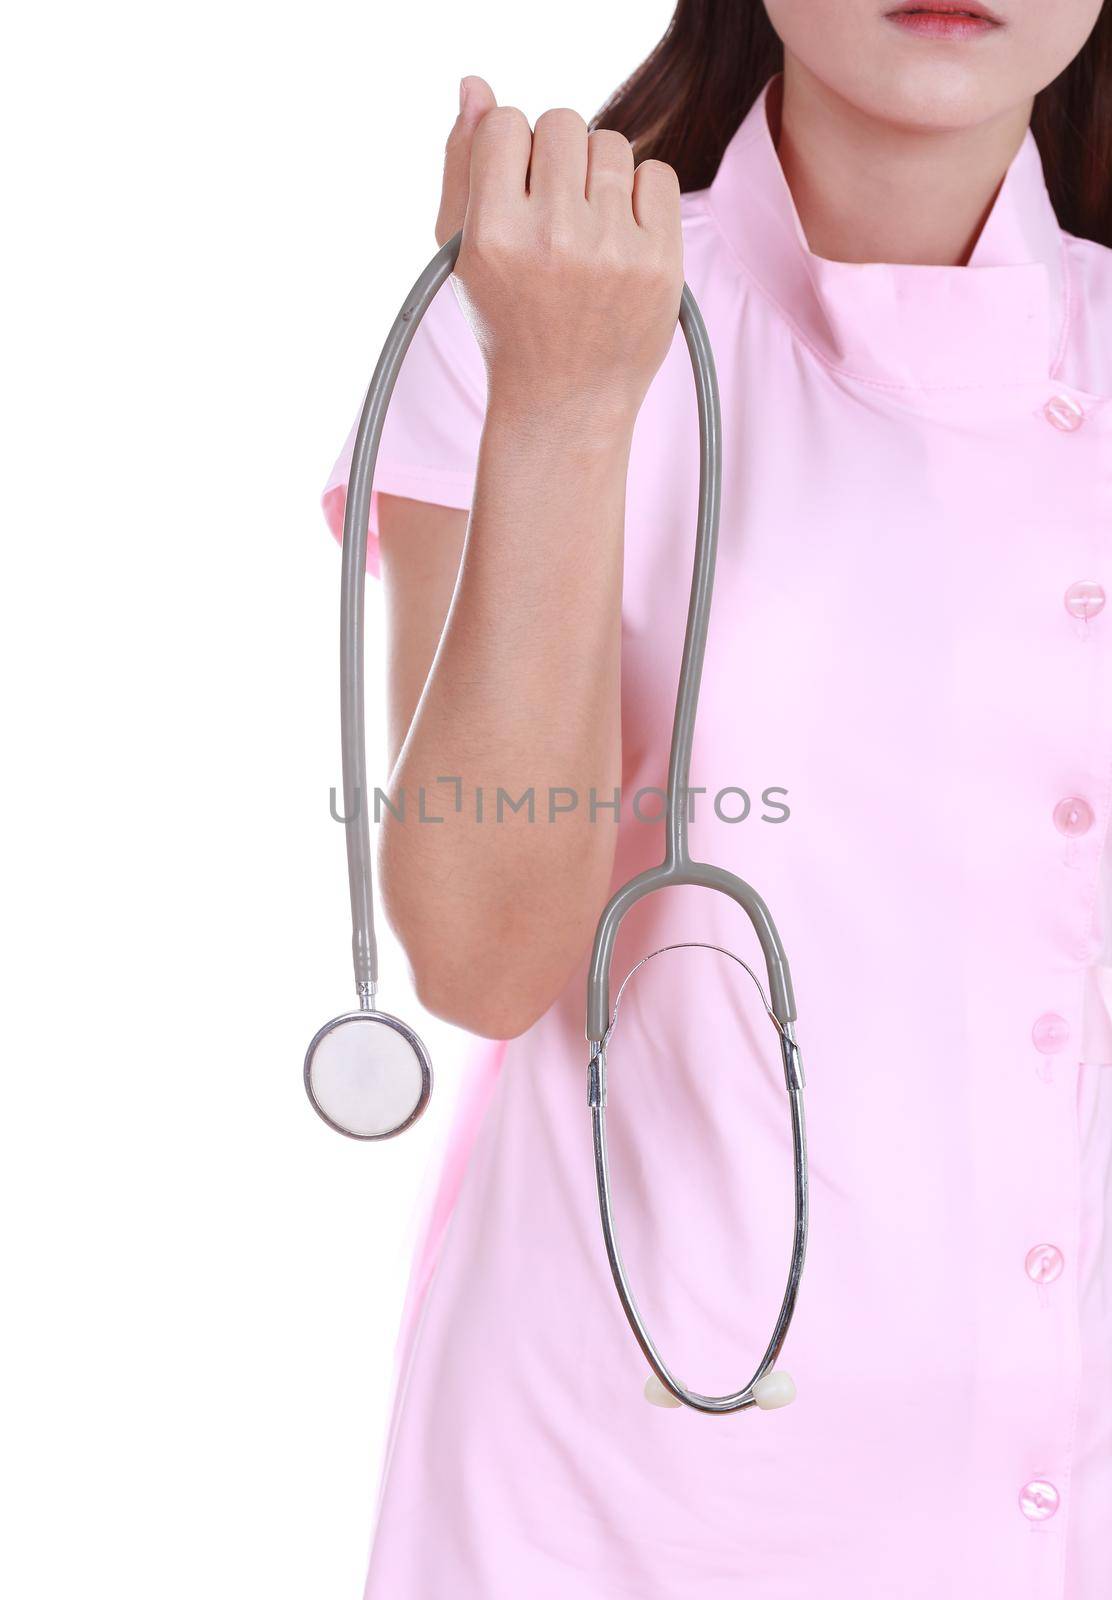 stethoscope with nurse by geargodz